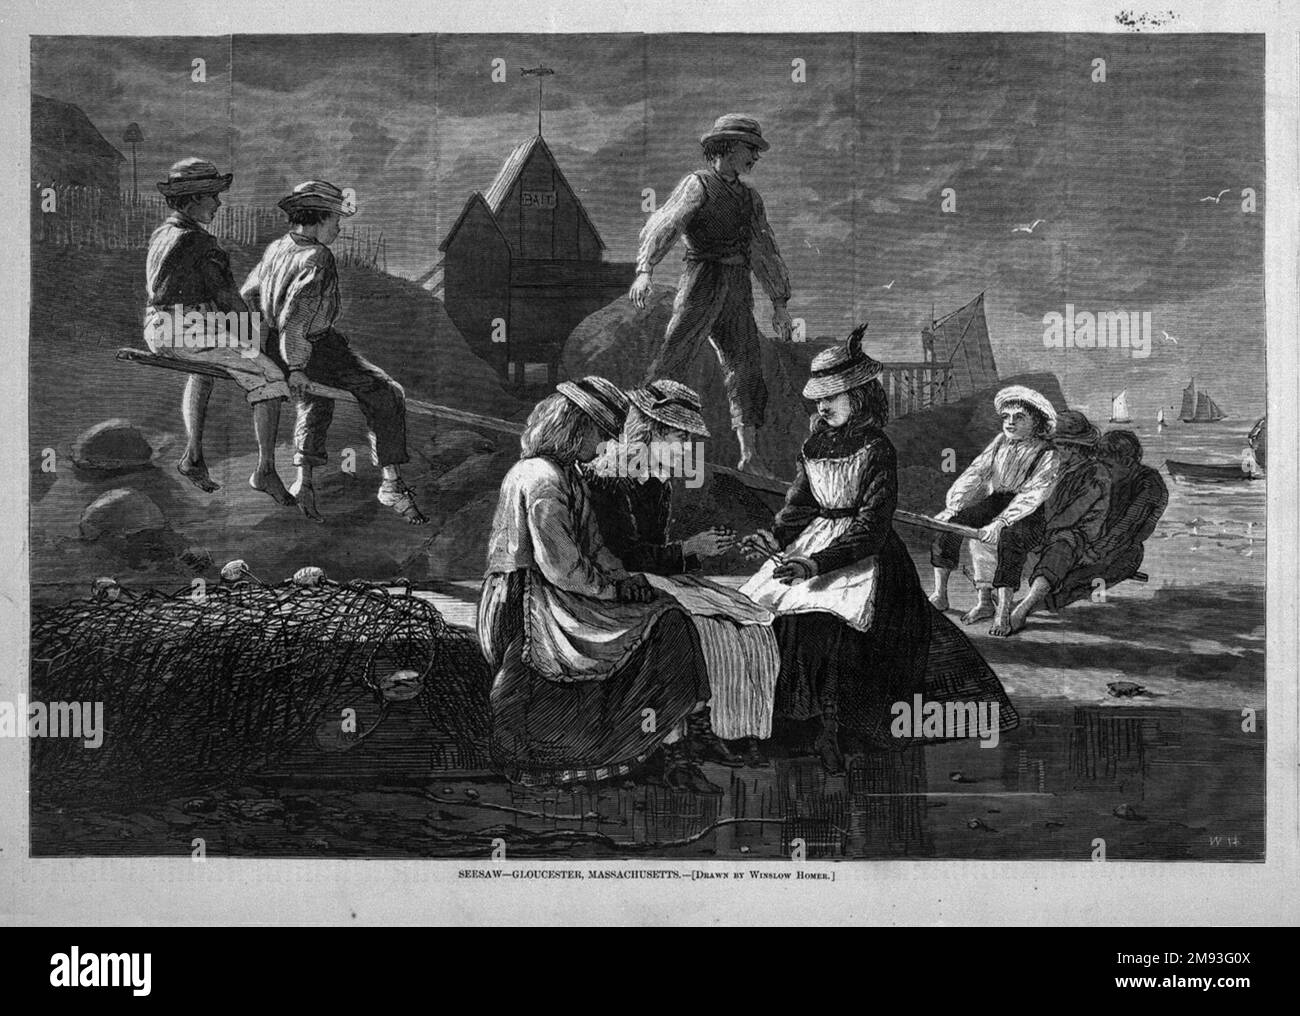 Seesaw--Gloucester, Massachusetts Winslow Homer (Amerikanisch, 1836-1910). , 1874. Holzgravierung, Bild: 9 1/4 x 14 Zoll (23,5 x 35,6 cm). Diese Illustration ist eine Kombination aus zwei früheren Aquarellen – einer, der die Jungen auf der Wippe darstellte, und einer, der die drei Mädchen darstellte, die Katzenwippe im Vordergrund spielten. Die hier dargestellte Trennung von Einzelpersonen oder Gruppen von Einzelpersonen ist bei Homers Arbeit nicht ungewöhnlich. Die Mädchen werden von den Jungen über ihnen dominiert, und doch bilden die Mädchen auch eine Basis, die die Zusammensetzung stabilisiert, was vielleicht Homers Ansichten über Beziehungen widerspiegelt Stockfoto